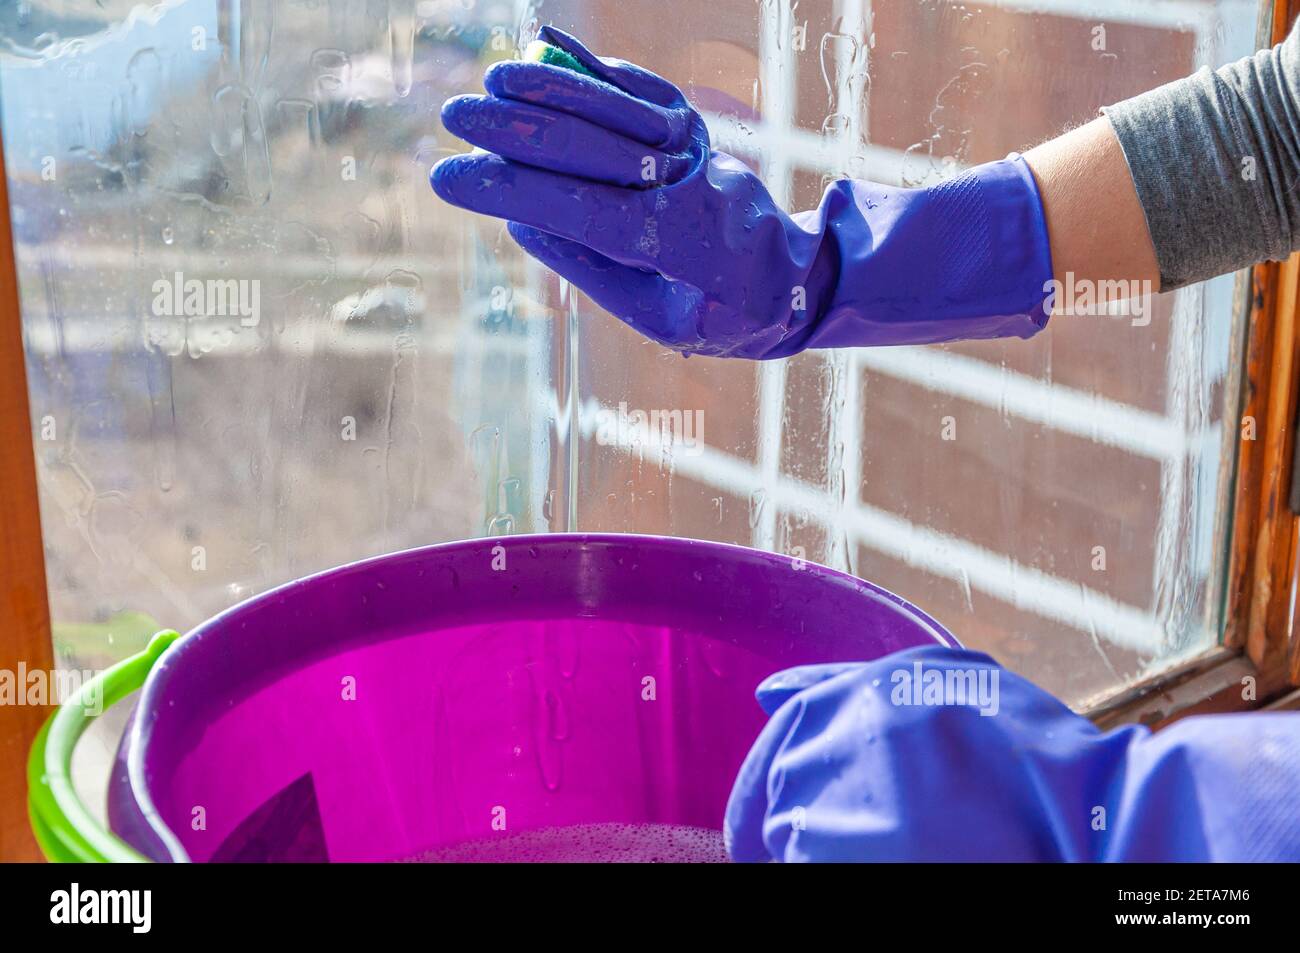 Ein violetter Plastikeimer mit Reinigungslösung und die Hände einer Frau in blauen Schutzhandschuhen, die das Fenster mit einem Schwamm waschen. Stockfoto